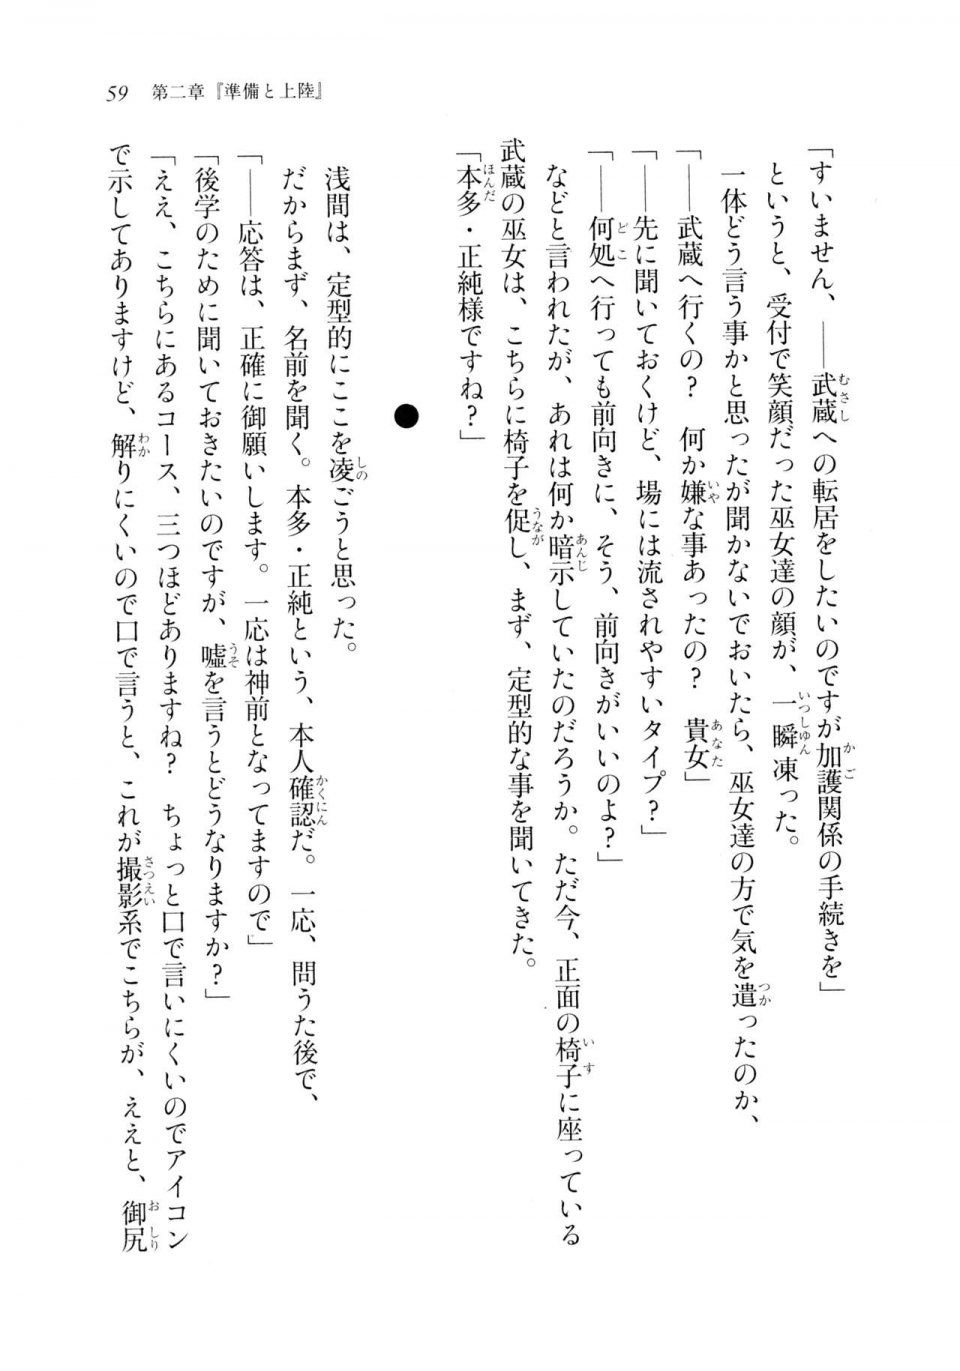 Kyoukai Senjou no Horizon LN Sidestory Vol 2 - Photo #57